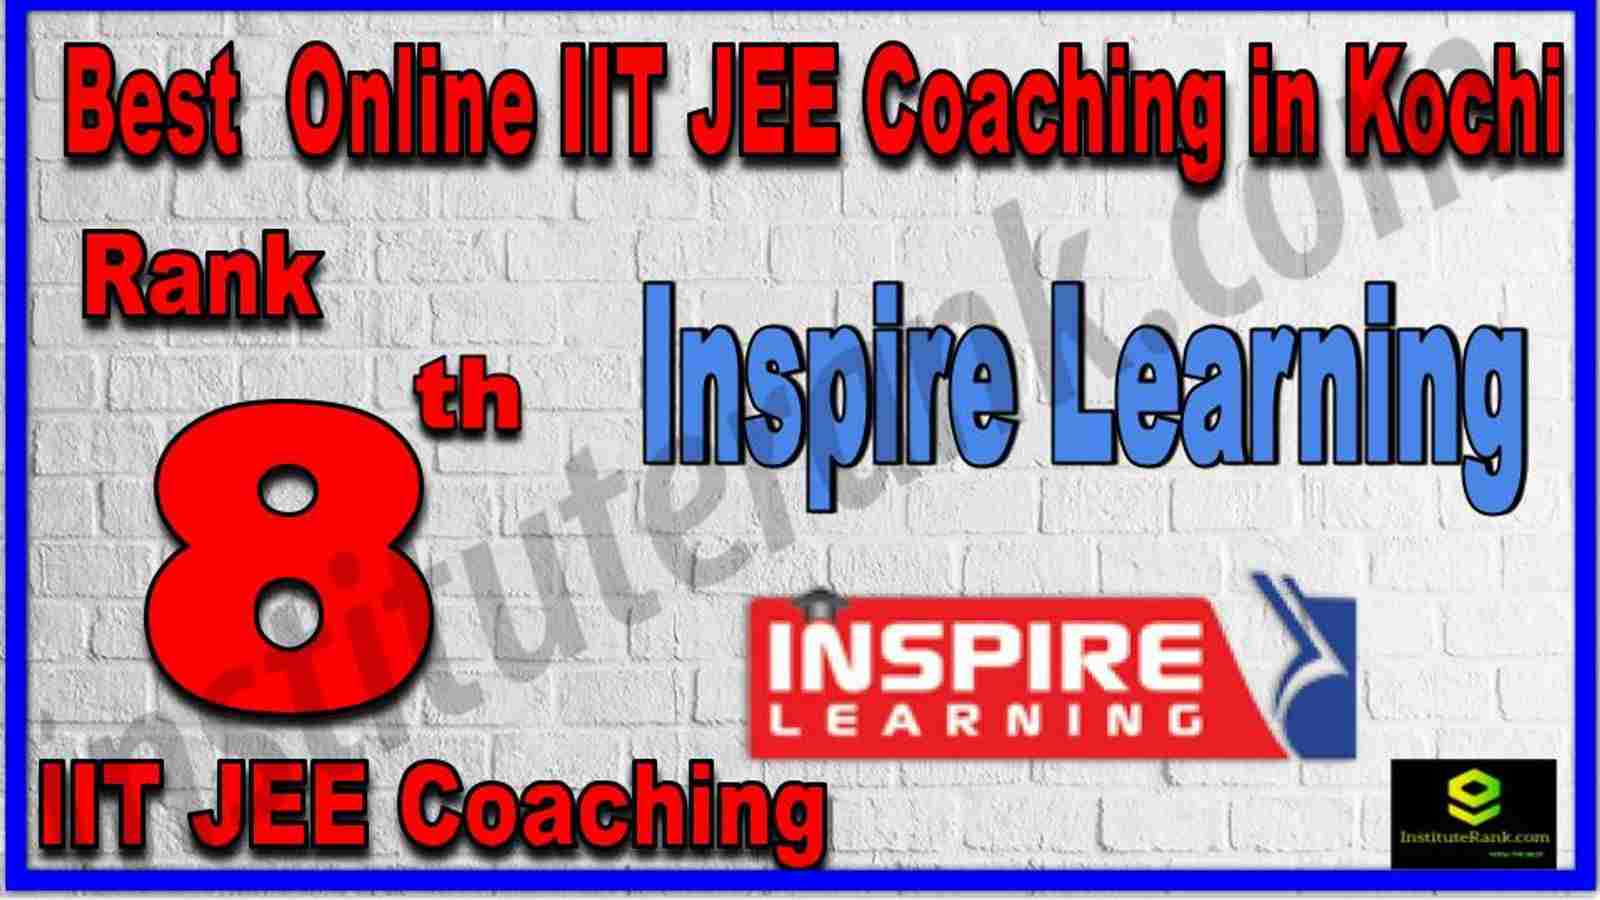 Rank 8th Best Online IIT JEE Coaching in Kochi